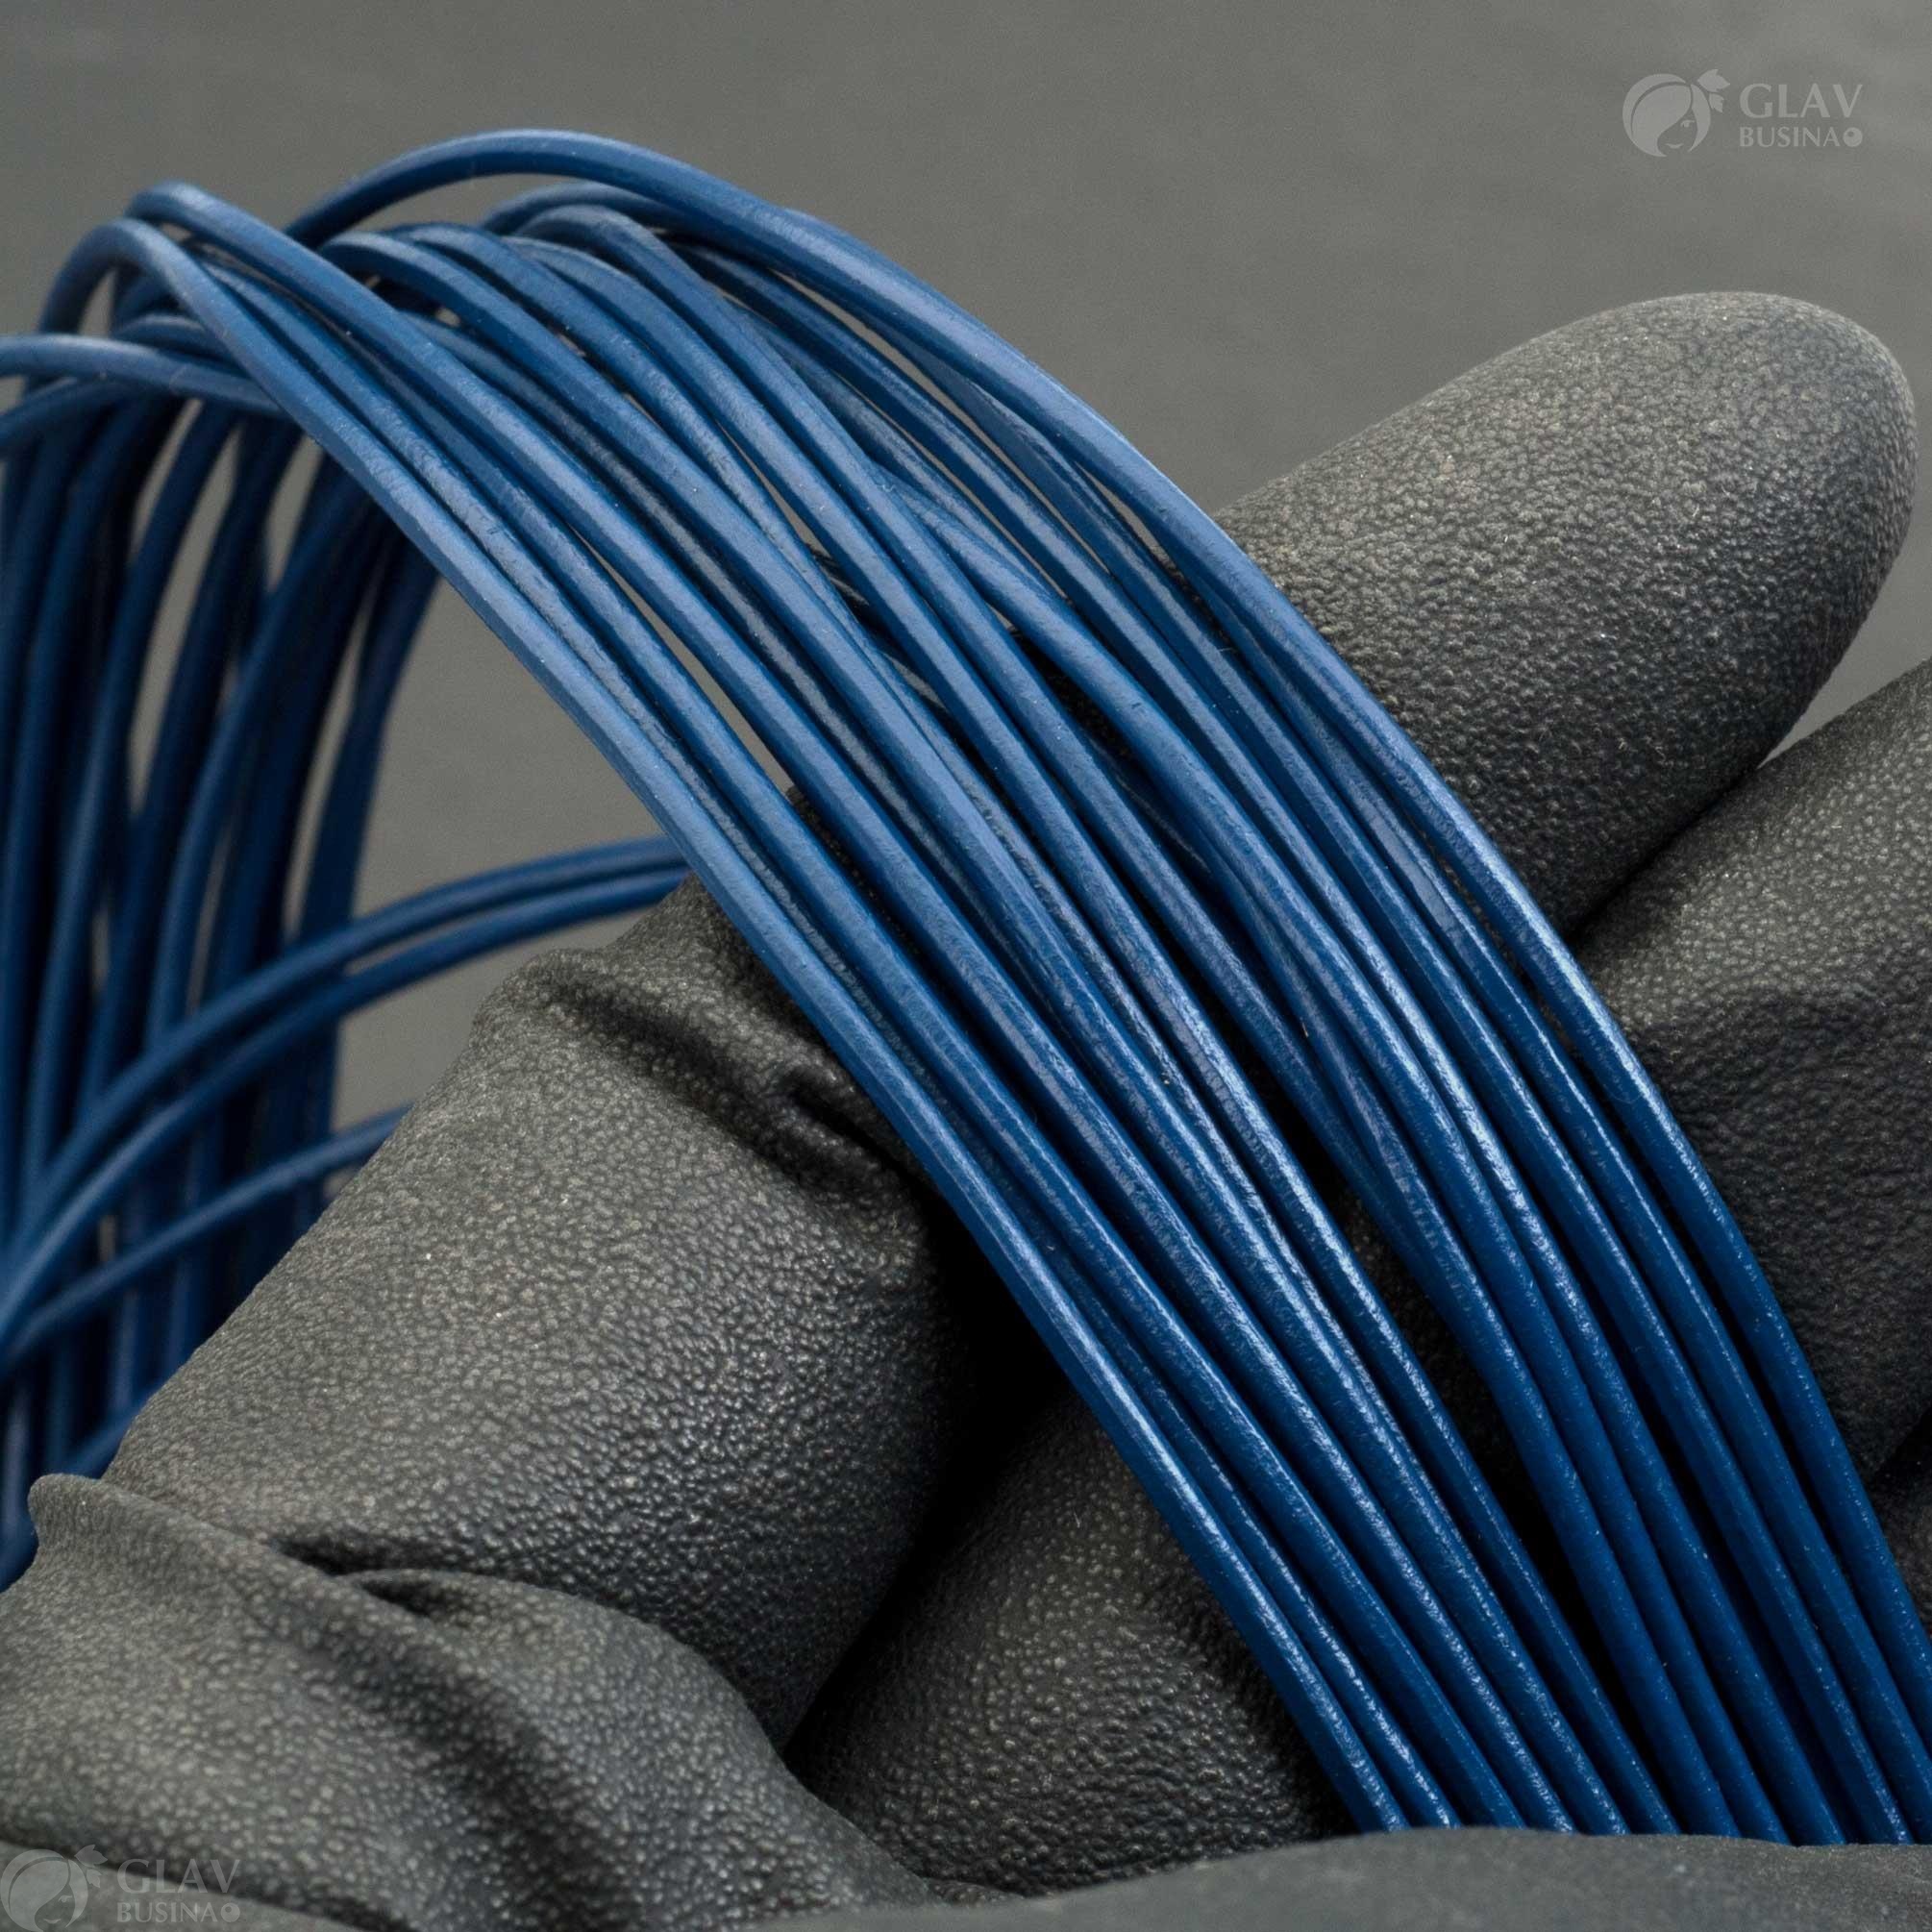 Глянцевый круглый шнур из натуральной кожи темно-синего цвета толщиной 1.5мм, продается метражом для изготовления кулонов и браслетов.